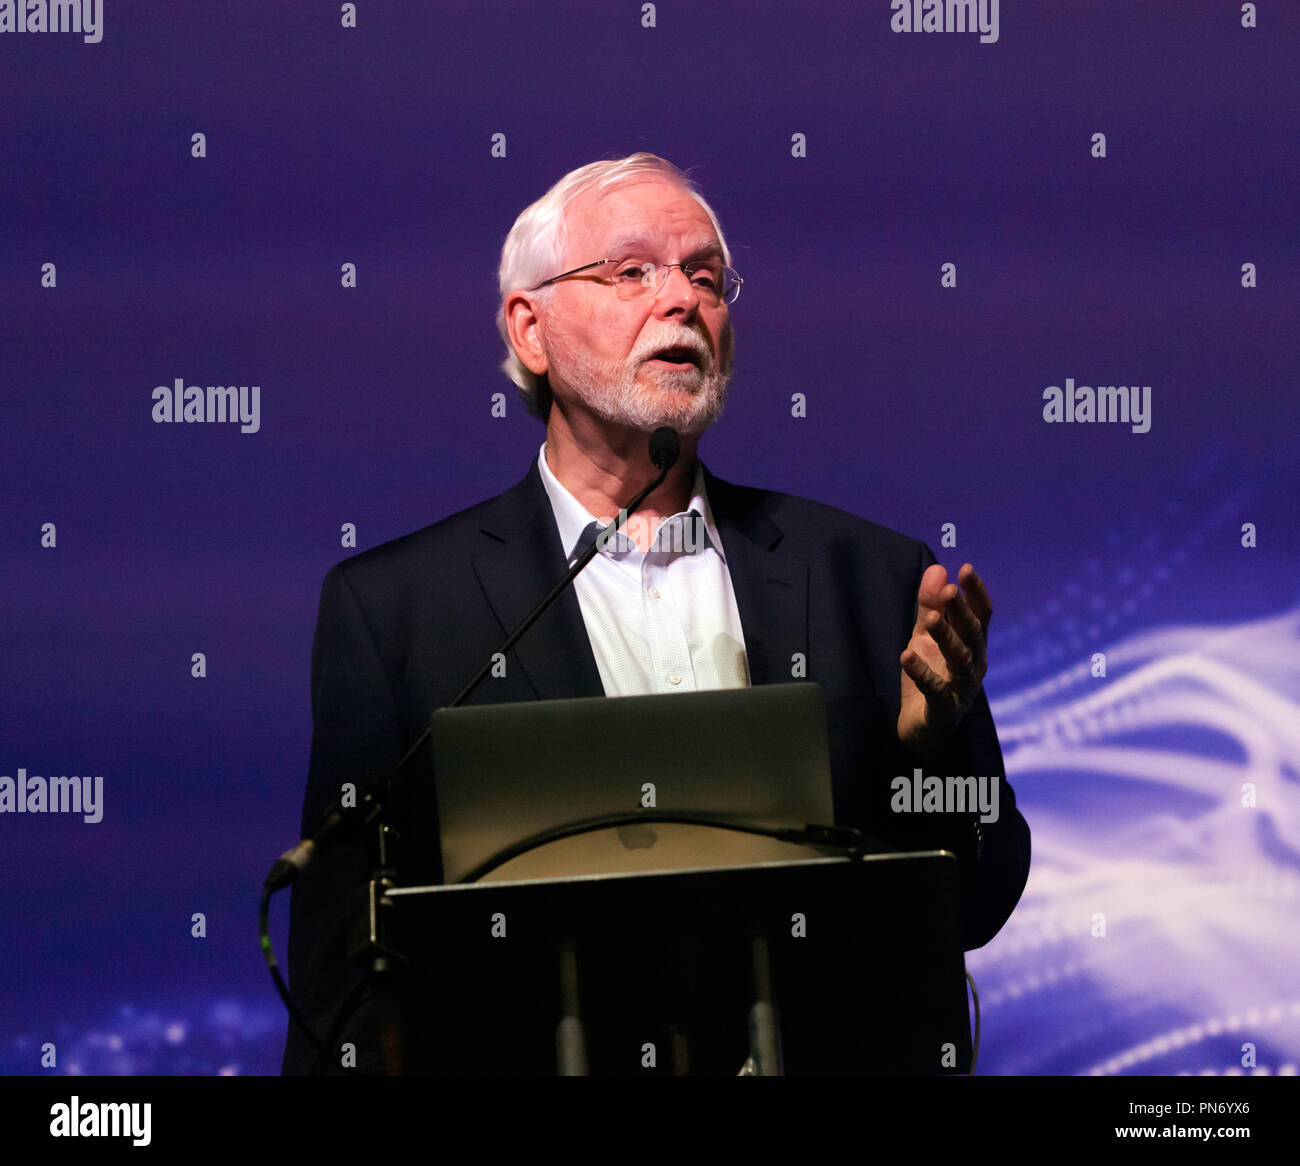 Celebre ingegnere John Donoghue parlando di come collegamenti di computer hanno aiutato le persone con lesioni cerebrali o paraplegia, di utilizzare i loro neuroni direttamente ai dispositivi di controllo in fase di progettazione, a New Scientist Live 2018 Foto Stock